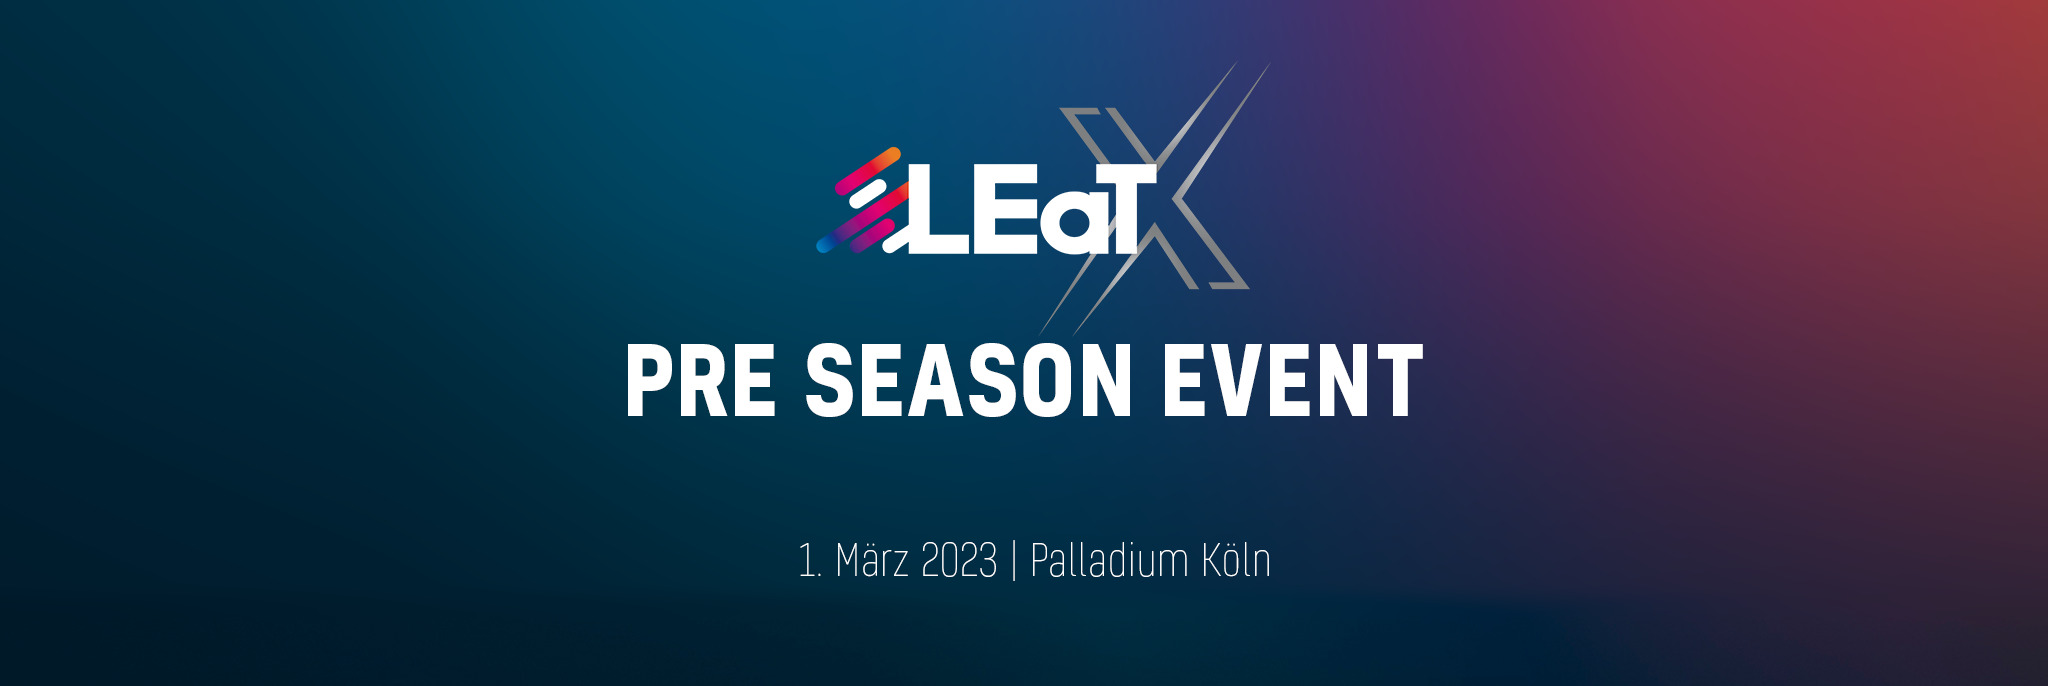 LEaT X 2023 Pre Season Event